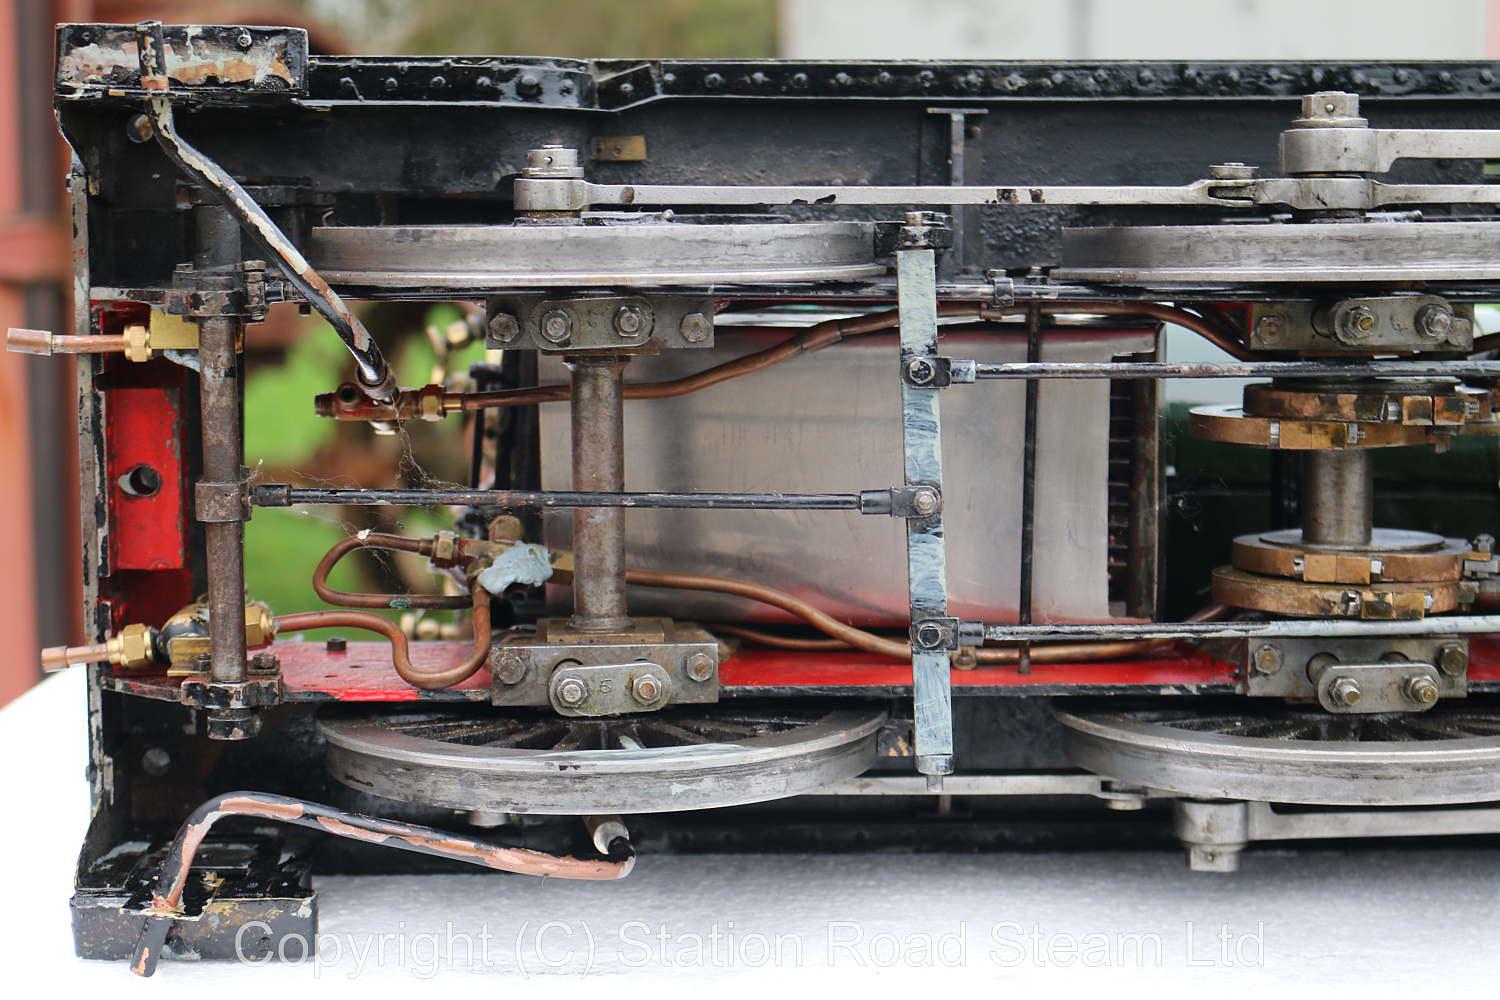 Dismantled 5 inch gauge GWR 43XX Mogul